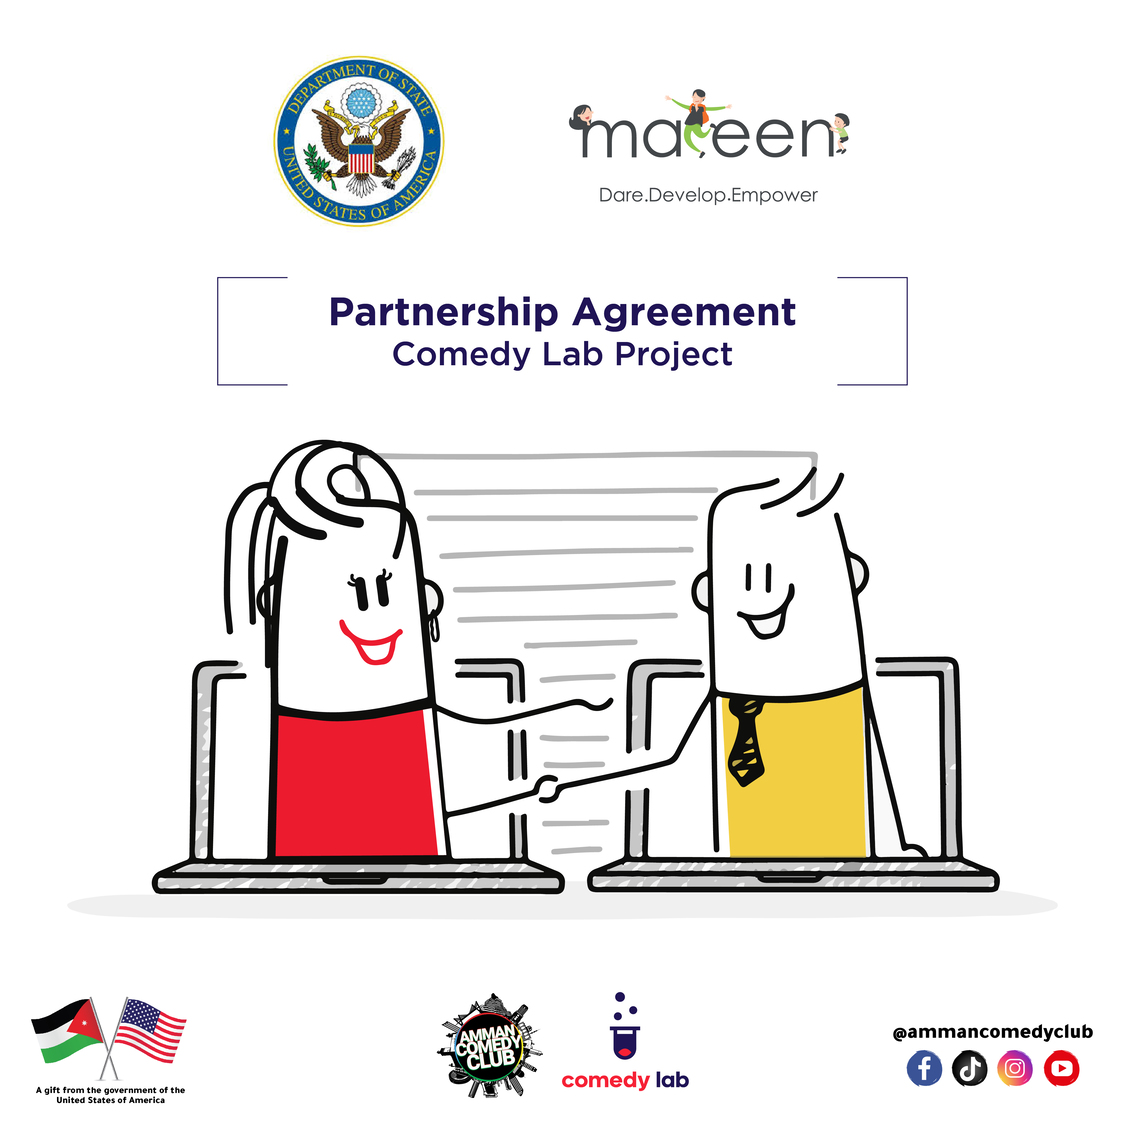 منظمة متين والسفارة الأمريكية يُوقعان اتفاقية شراكة لإطلاق مشروع  “كوميدي لاب” بالتعاون مع نادي عمان للكوميديا.